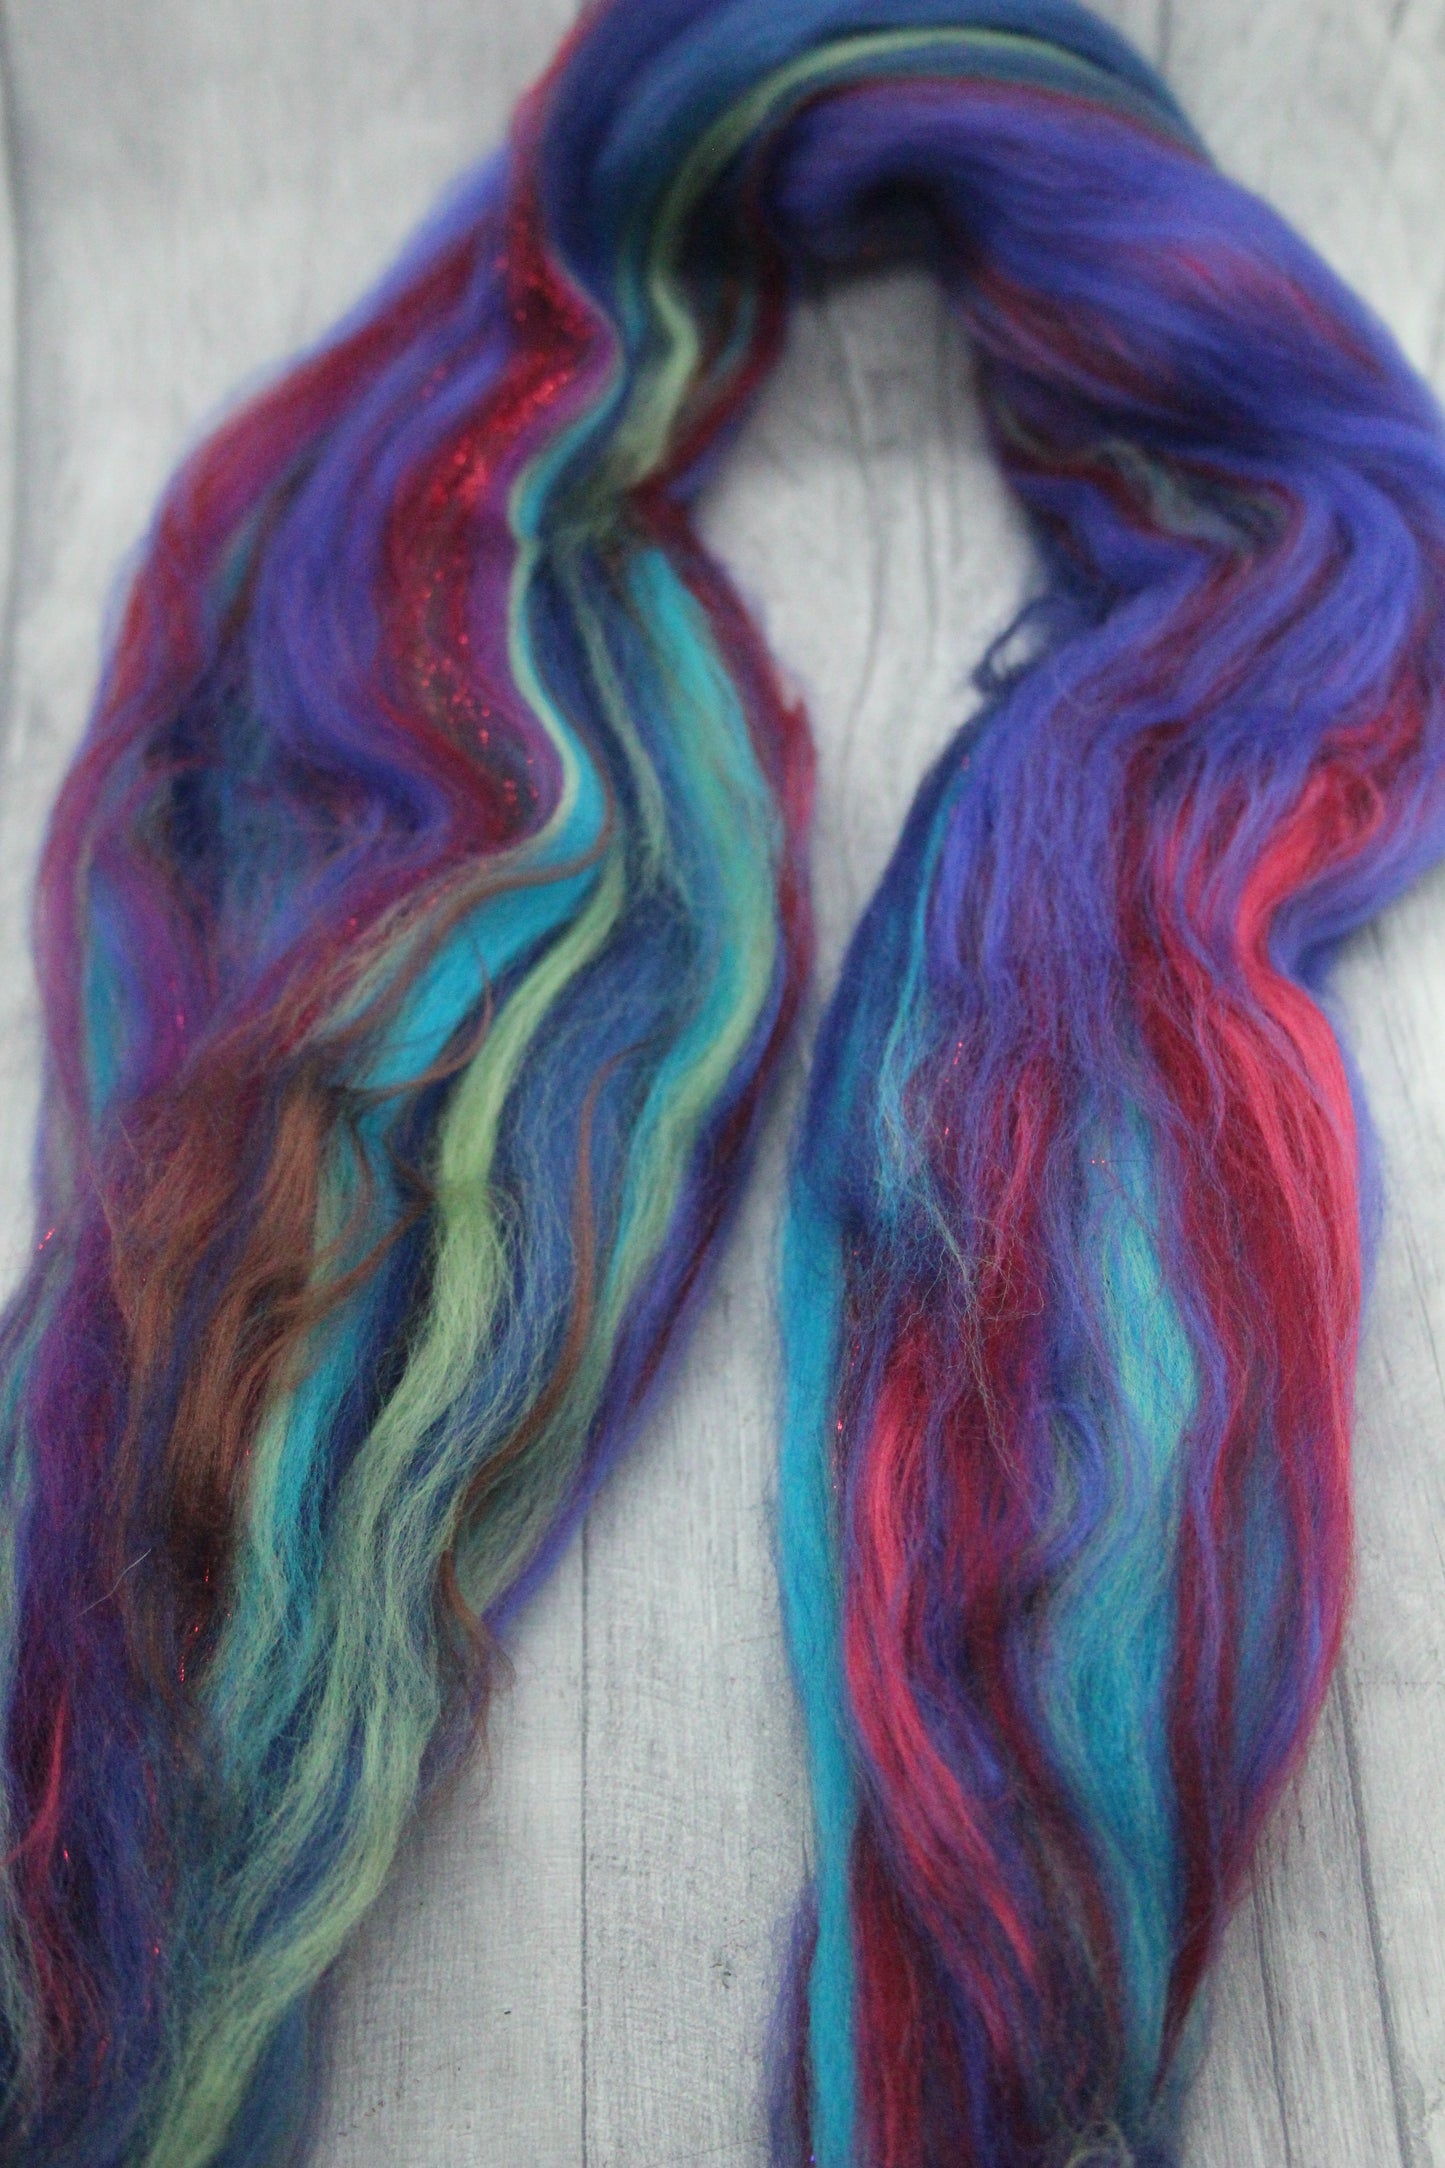 Wool Blend - Blue Red Ultraviolet  - 25 grams / 0.8 oz  - Fibre for felting, weaving or spinning